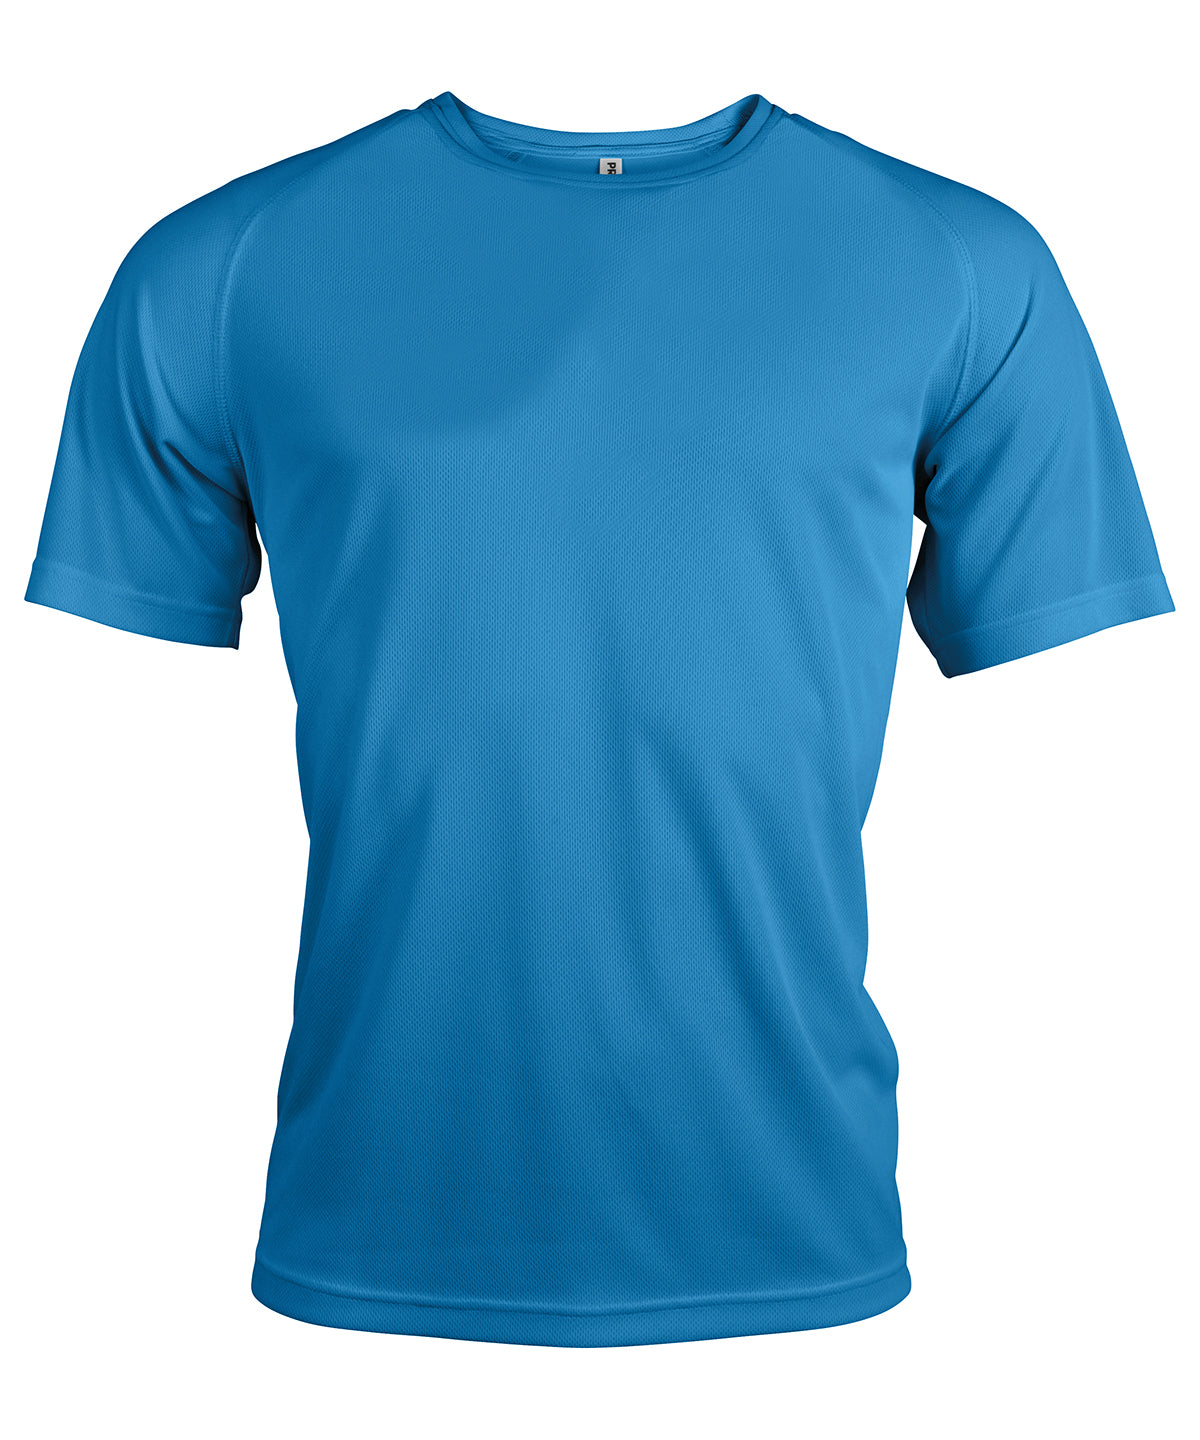 Stuttermabolir - Men's Short-sleeved Sports T-shirt